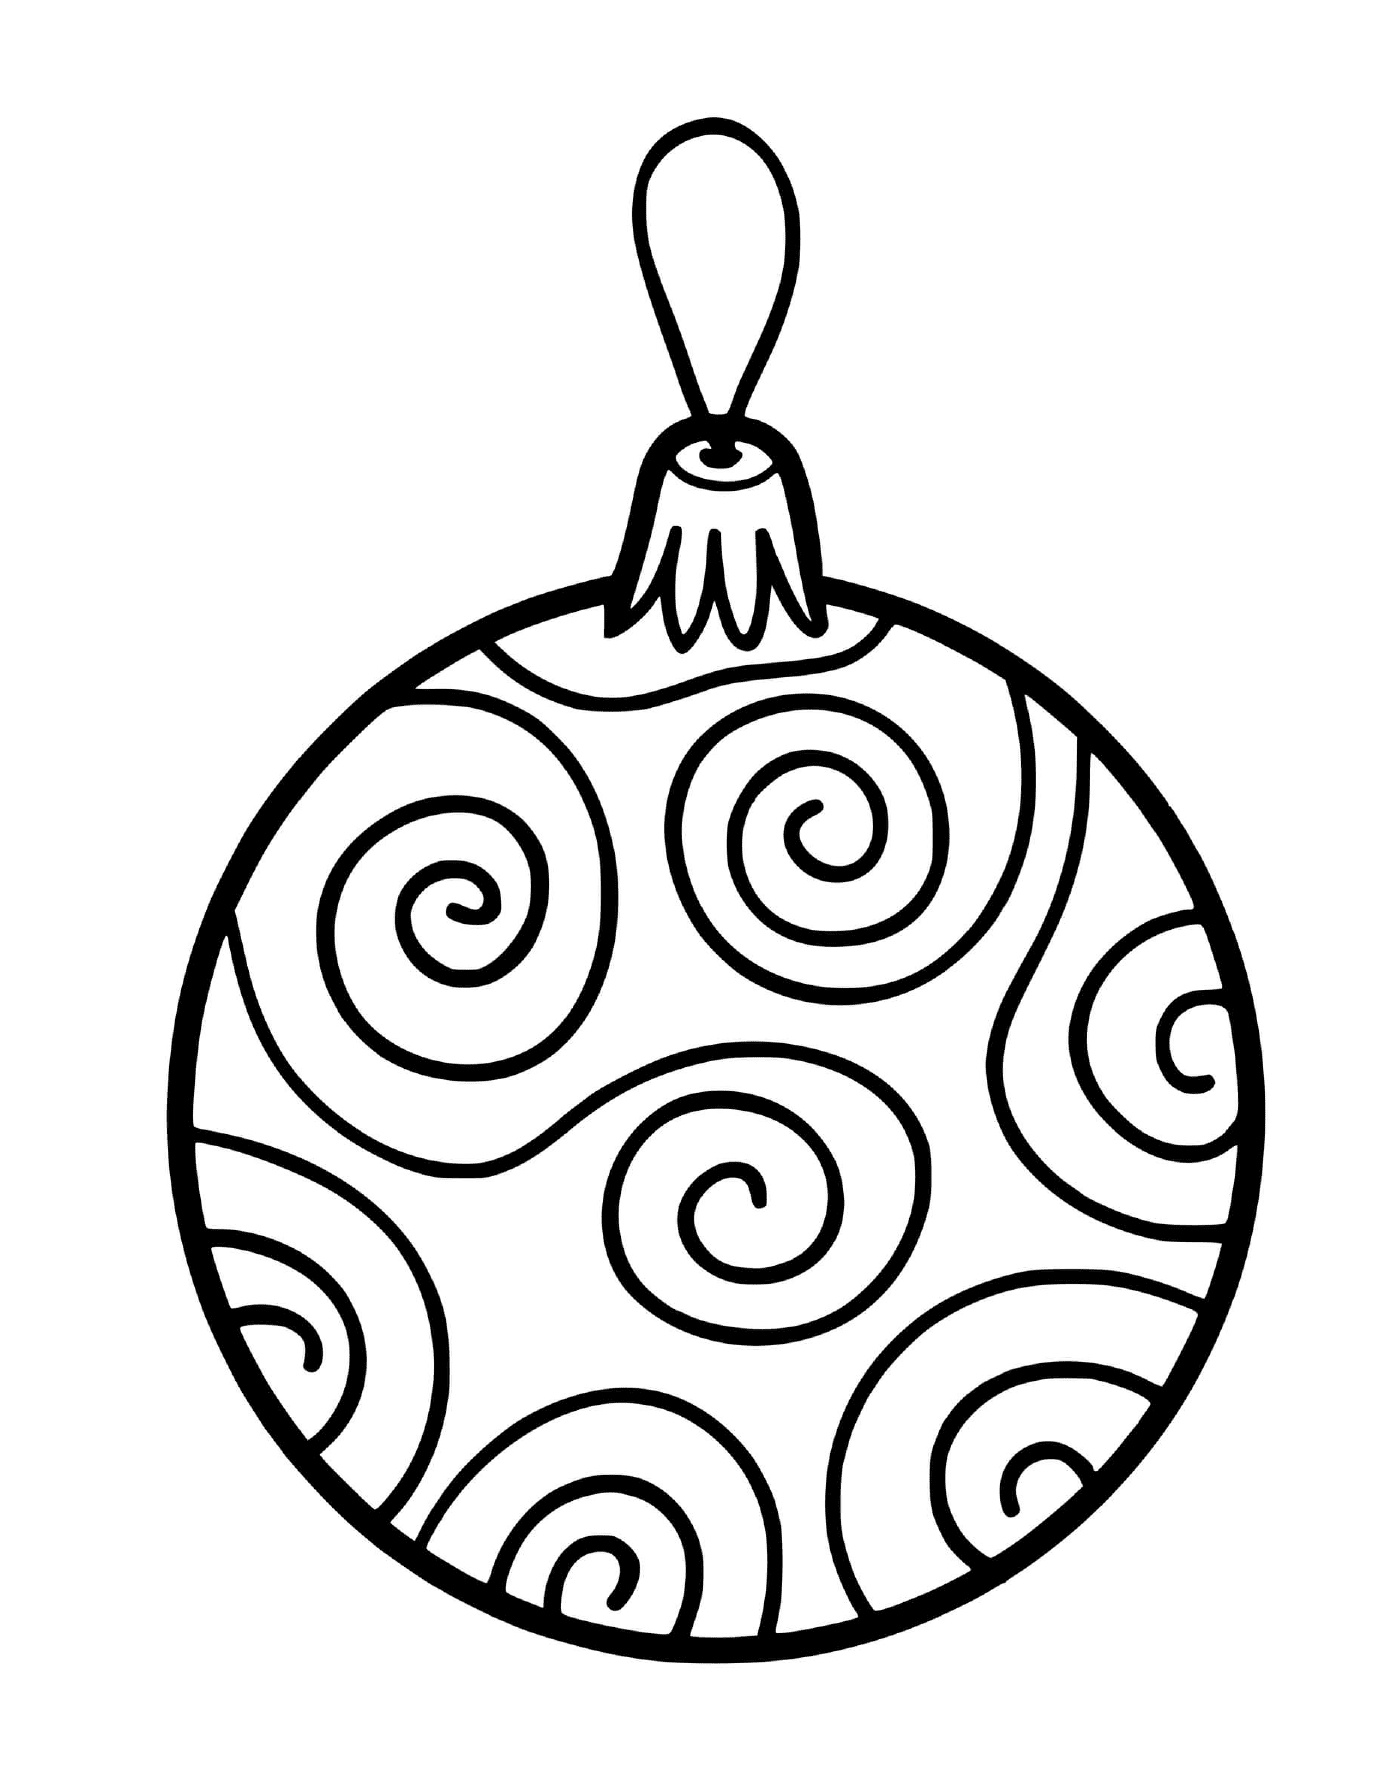  A شجرة شجرة عيد الميلاد الكرة مع zigzazags 